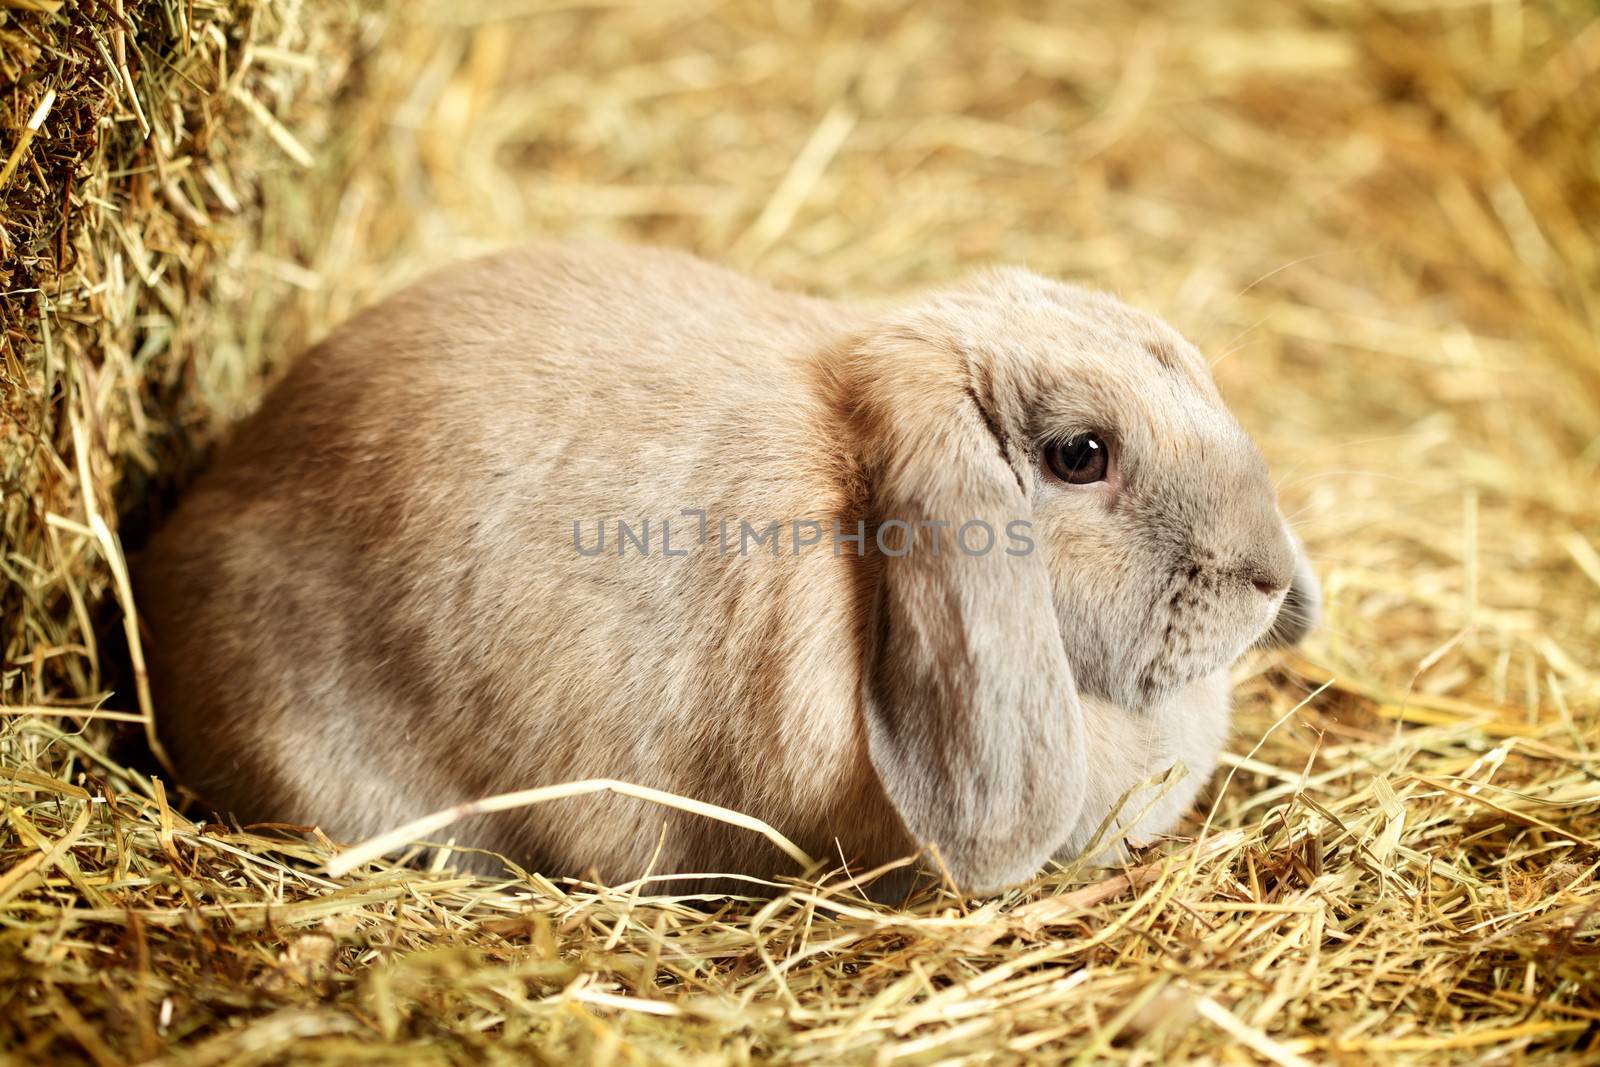 Lop-earred Rabbit by petr_malyshev